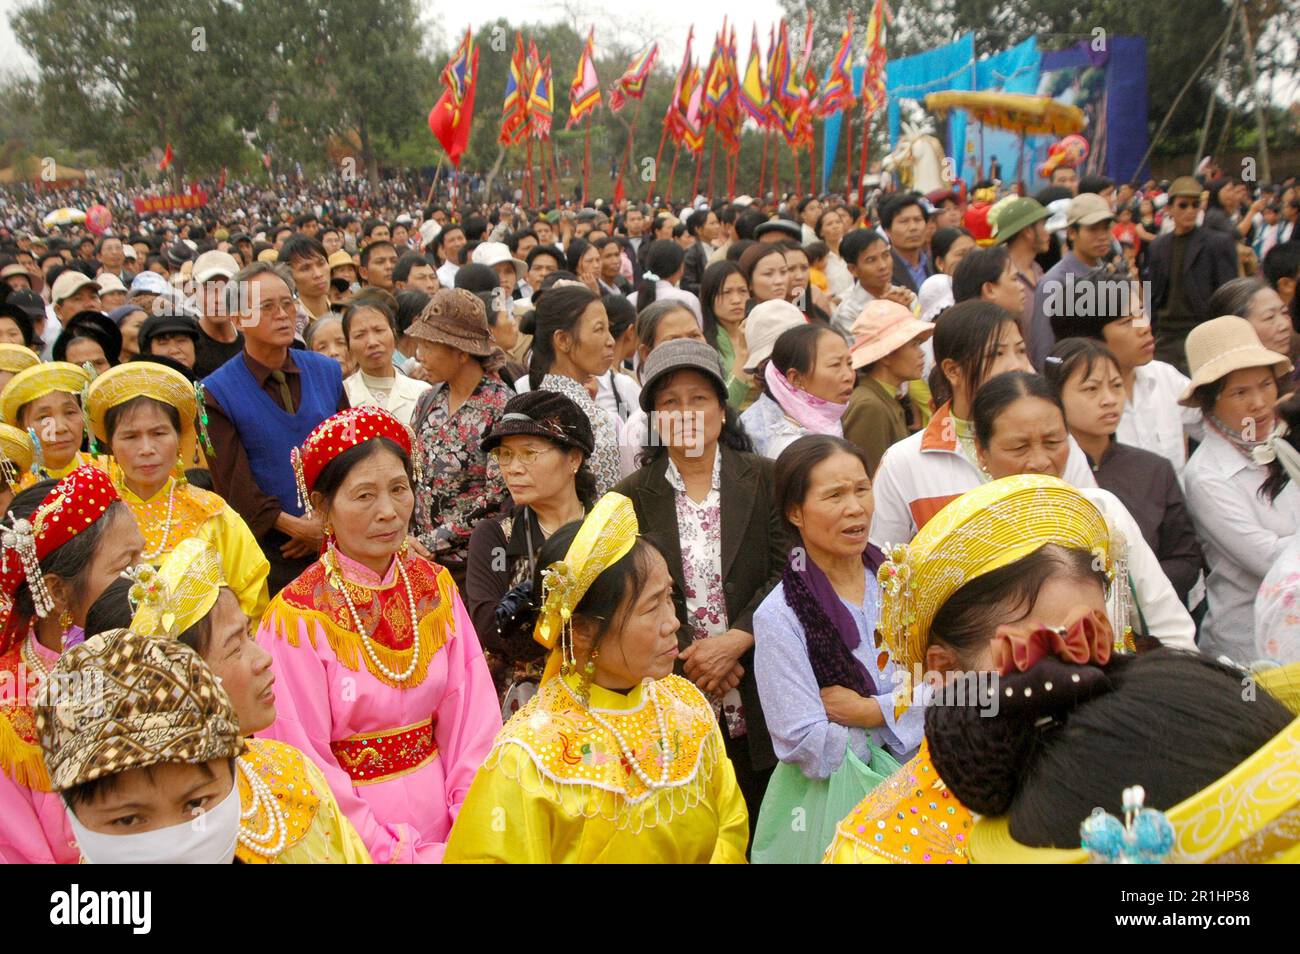 BAC Ninh, Vietnam März 2007: Lim Festival on Tet Holiday. 越南旅游, Turismo Vietnamita, वियतनाम पर्यटन, Vietnam voluptuaria, 베트남 관광, ベトナム観光, ឌូលីច វៀតណាម Stockfoto